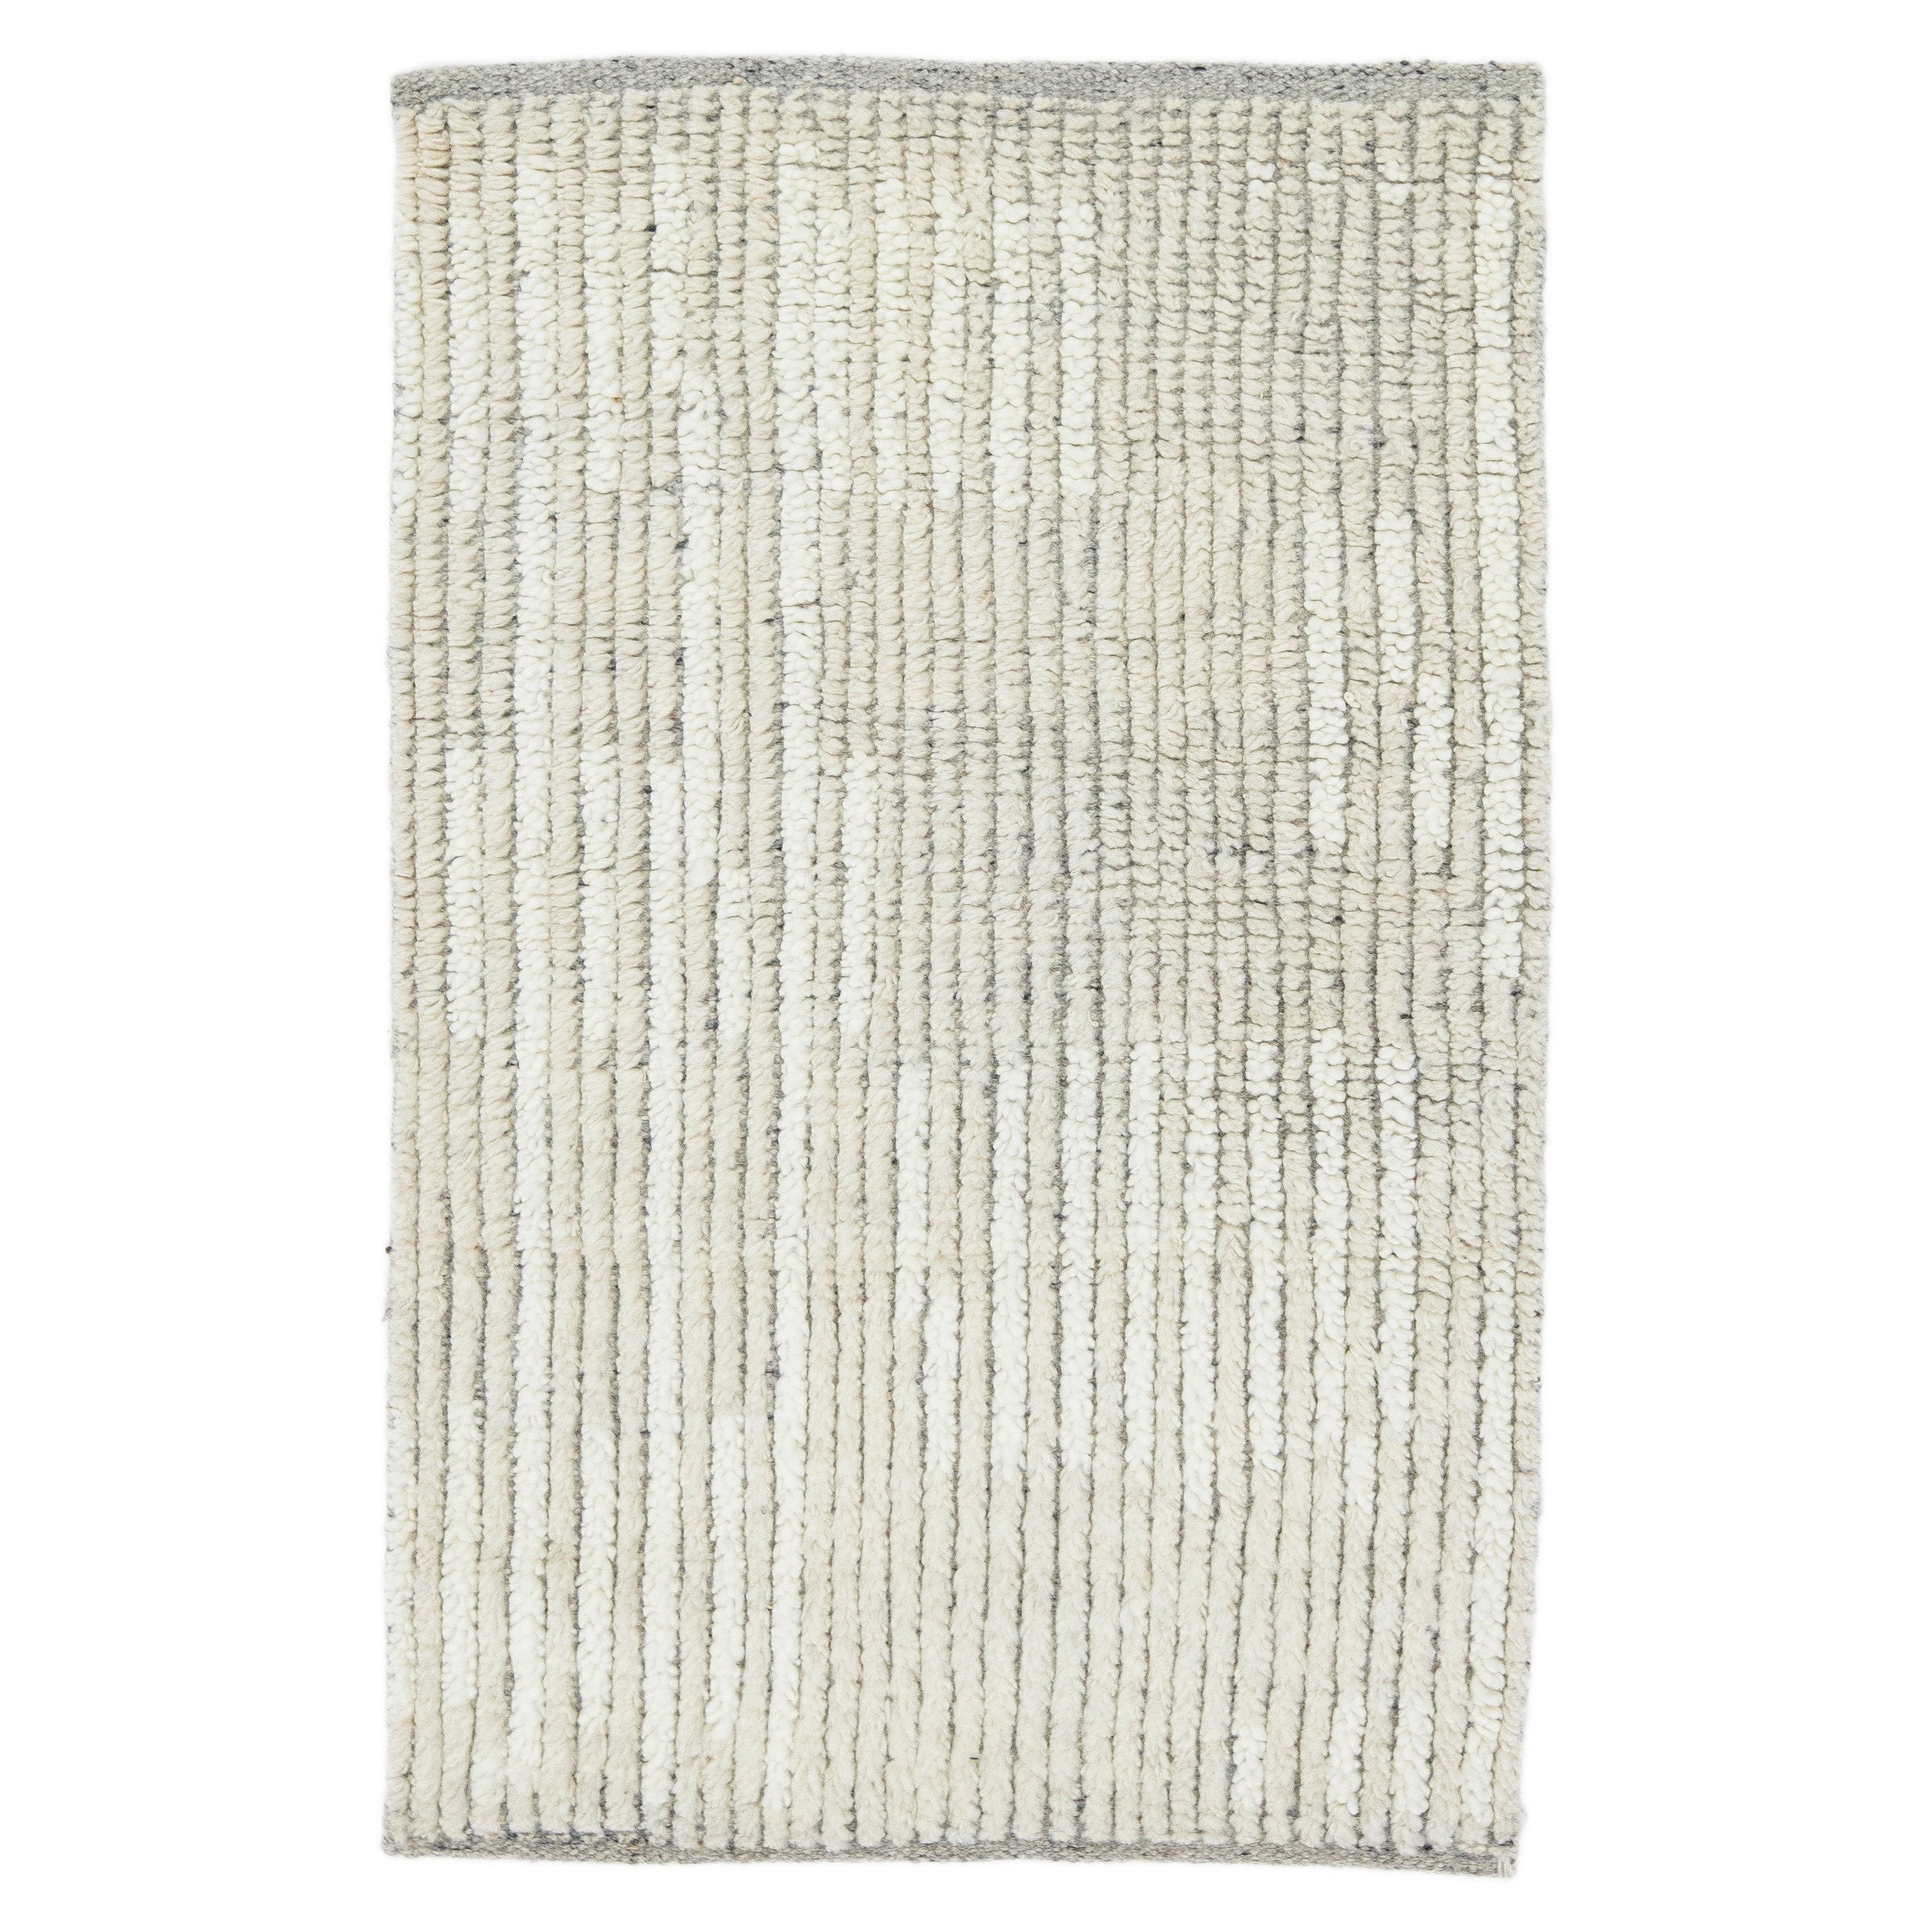 Tapis en laine ivoire moderne de style marocain fait à la main et personnalisé